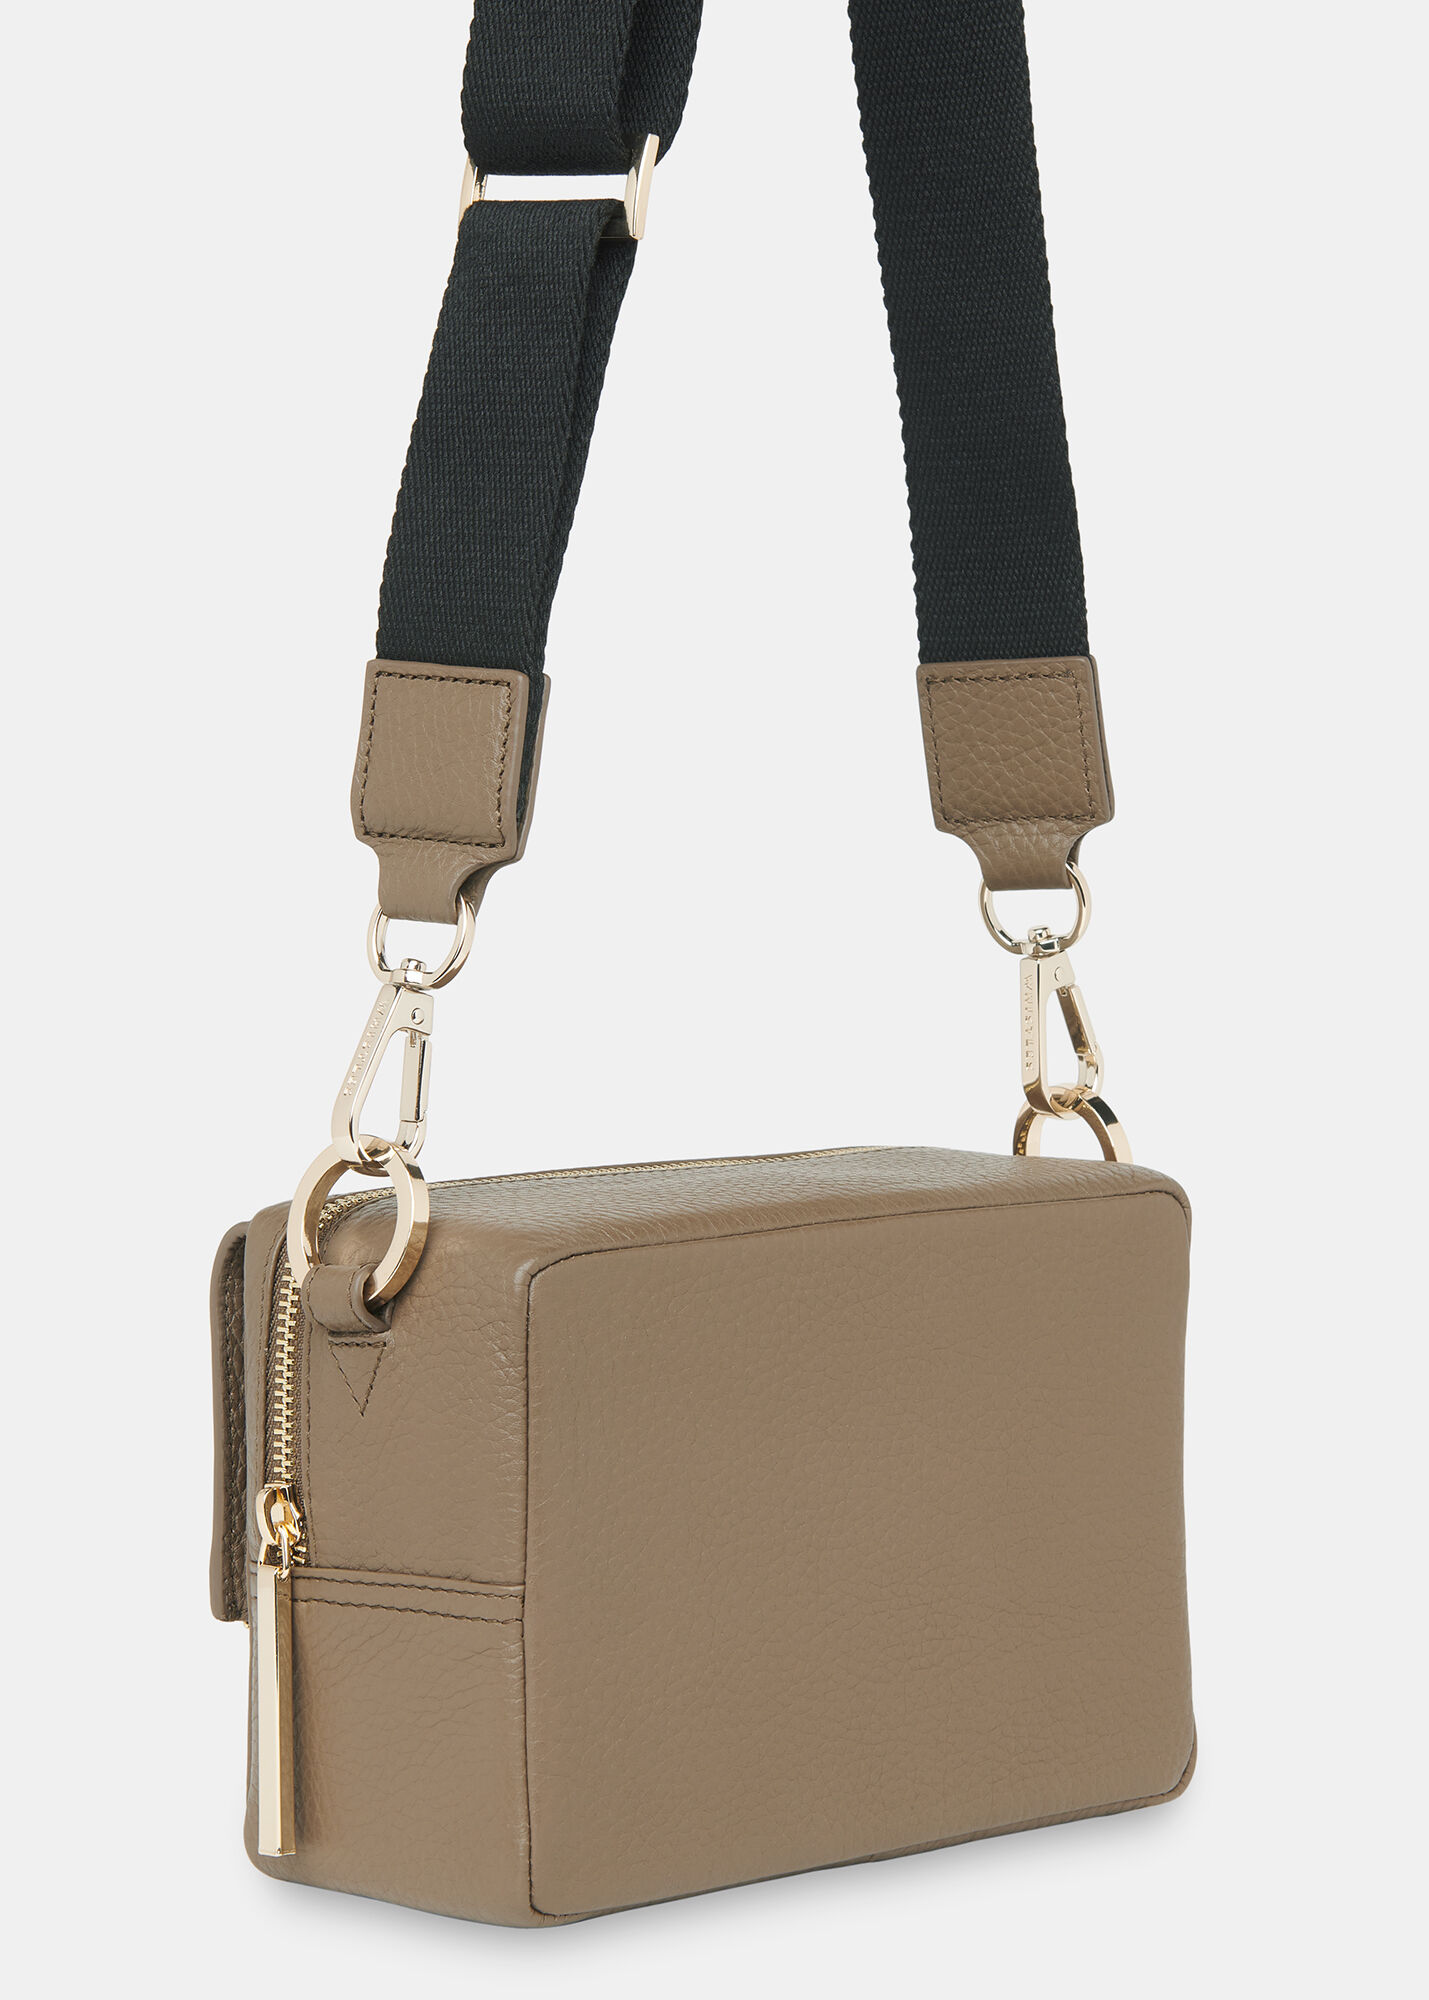 Bibi Khaki Leather Crossbody Bag With Strap | Whistles